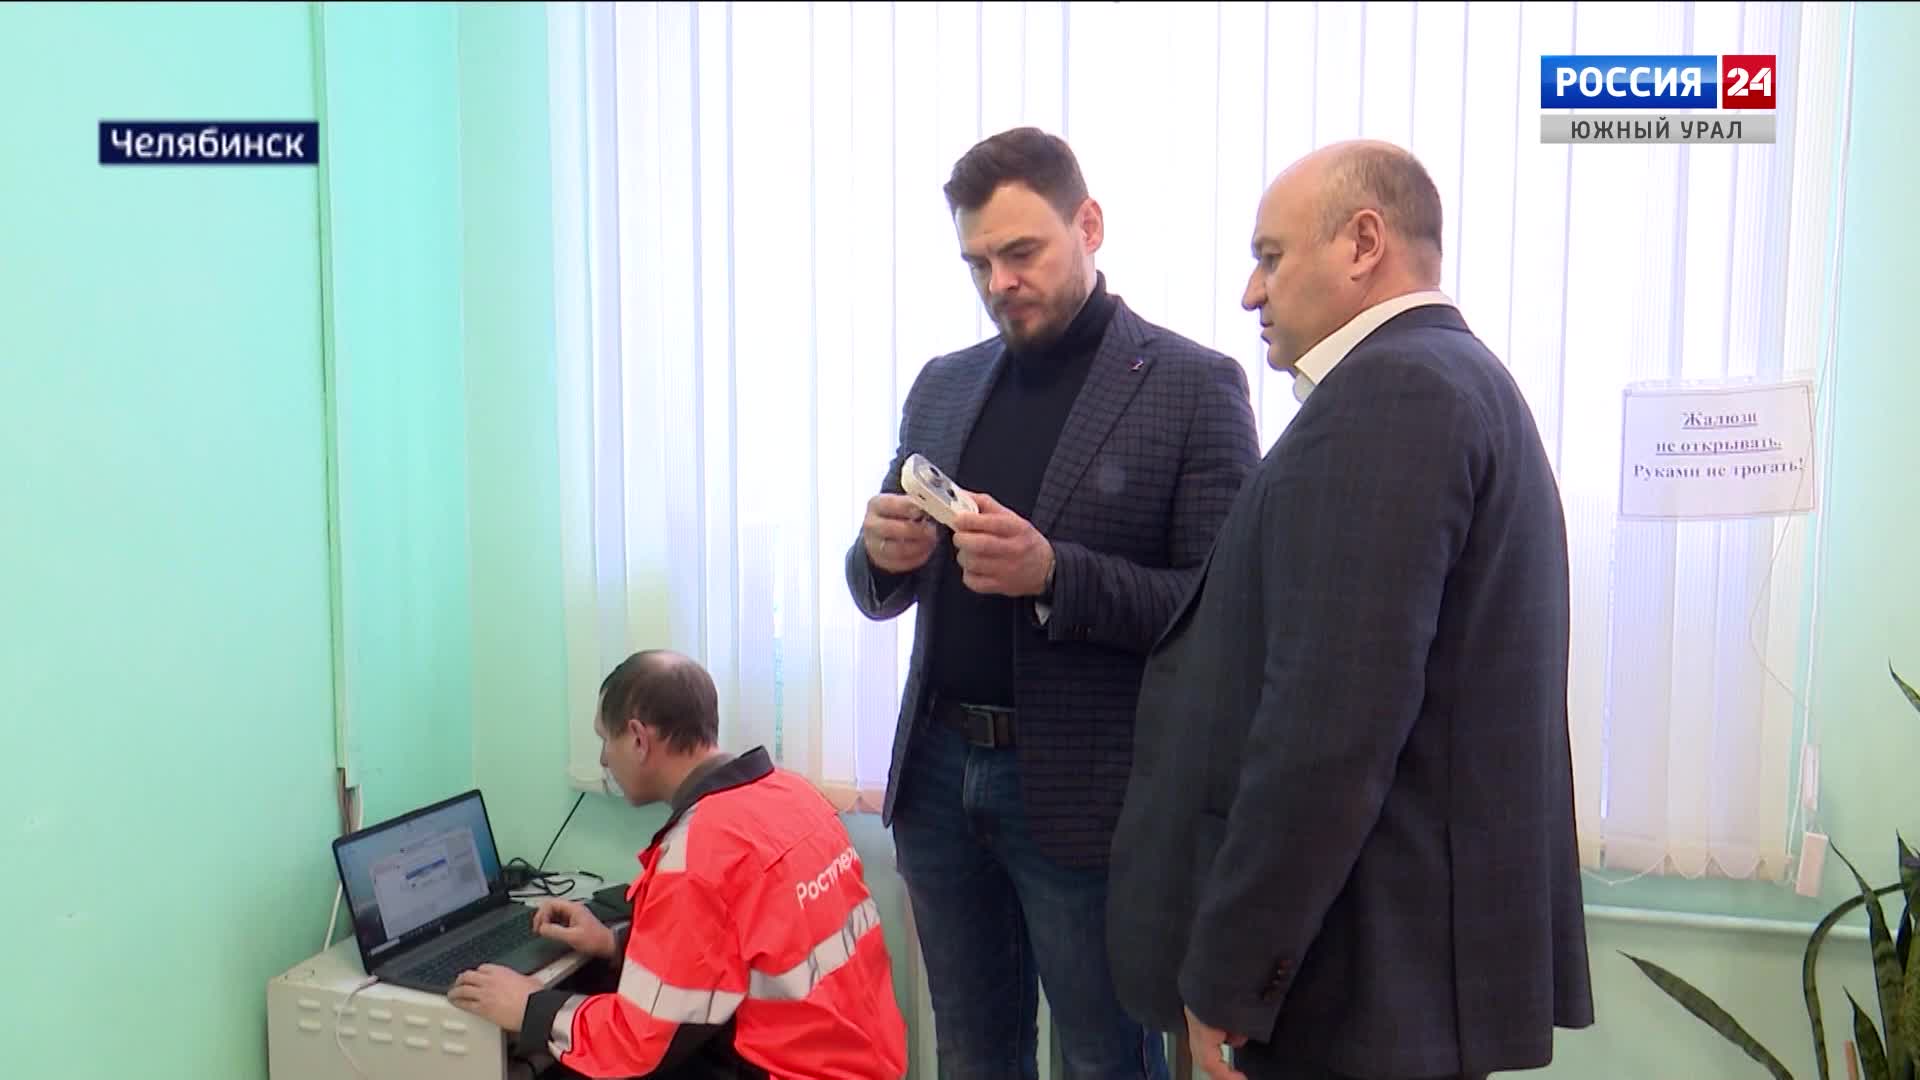 Камеру видеонаблюдения на избирательном участке в Челябинске установила балерина